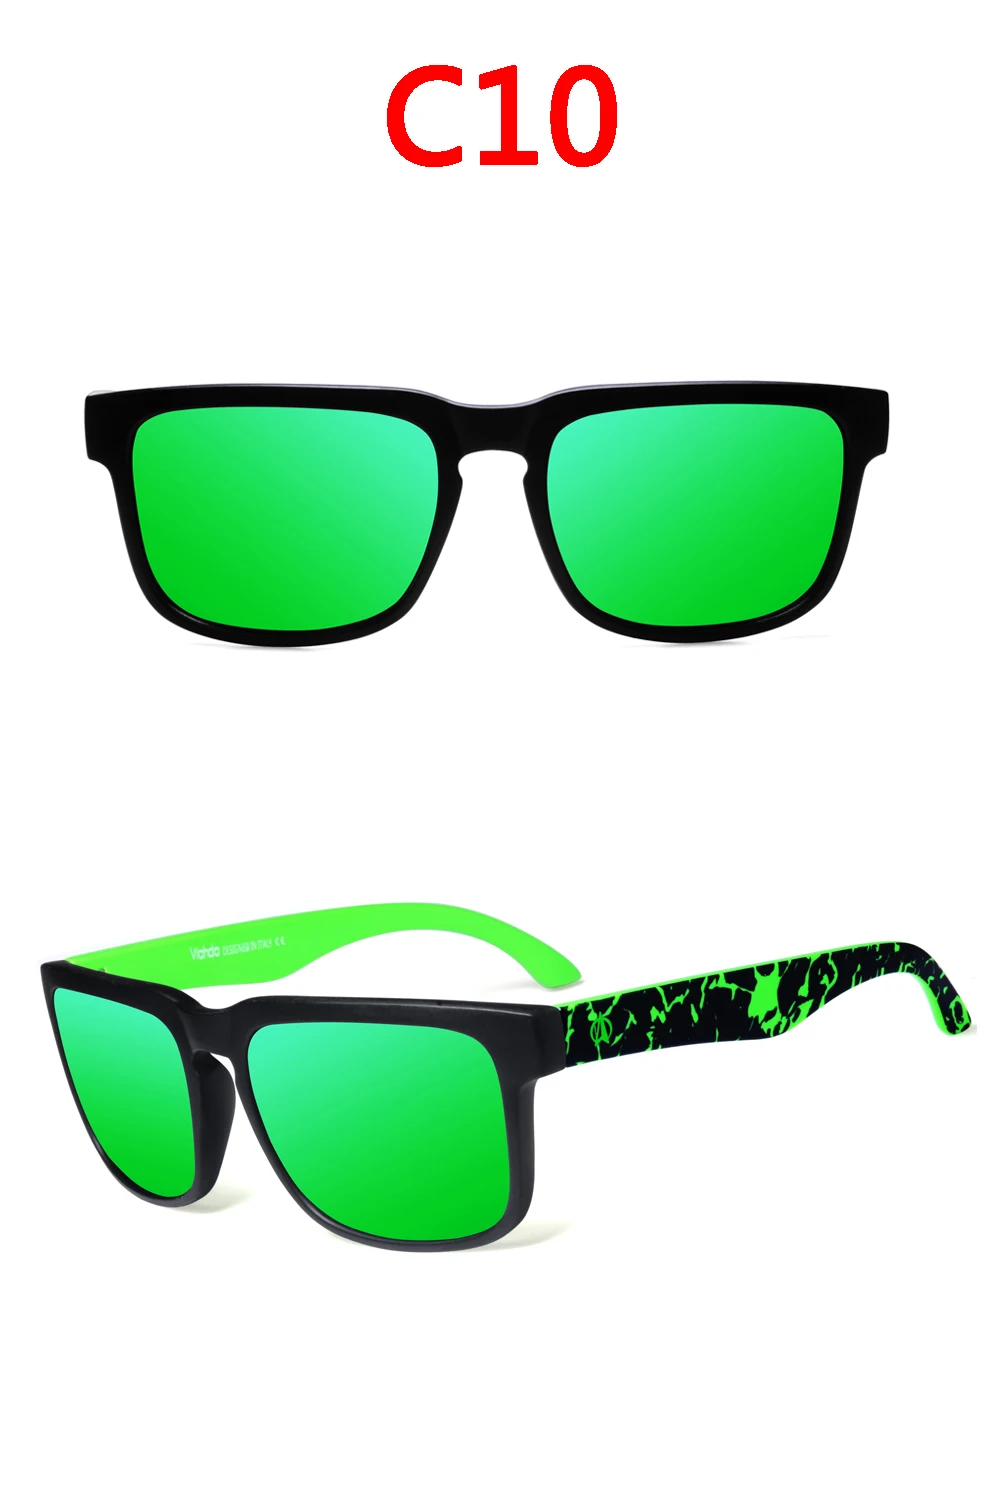 VIAHDA новые и крутые поляризованные солнцезащитные очки, классические мужские солнцезащитные очки, брендовые дизайнерские солнцезащитные очки, мужские солнцезащитные очки UV400